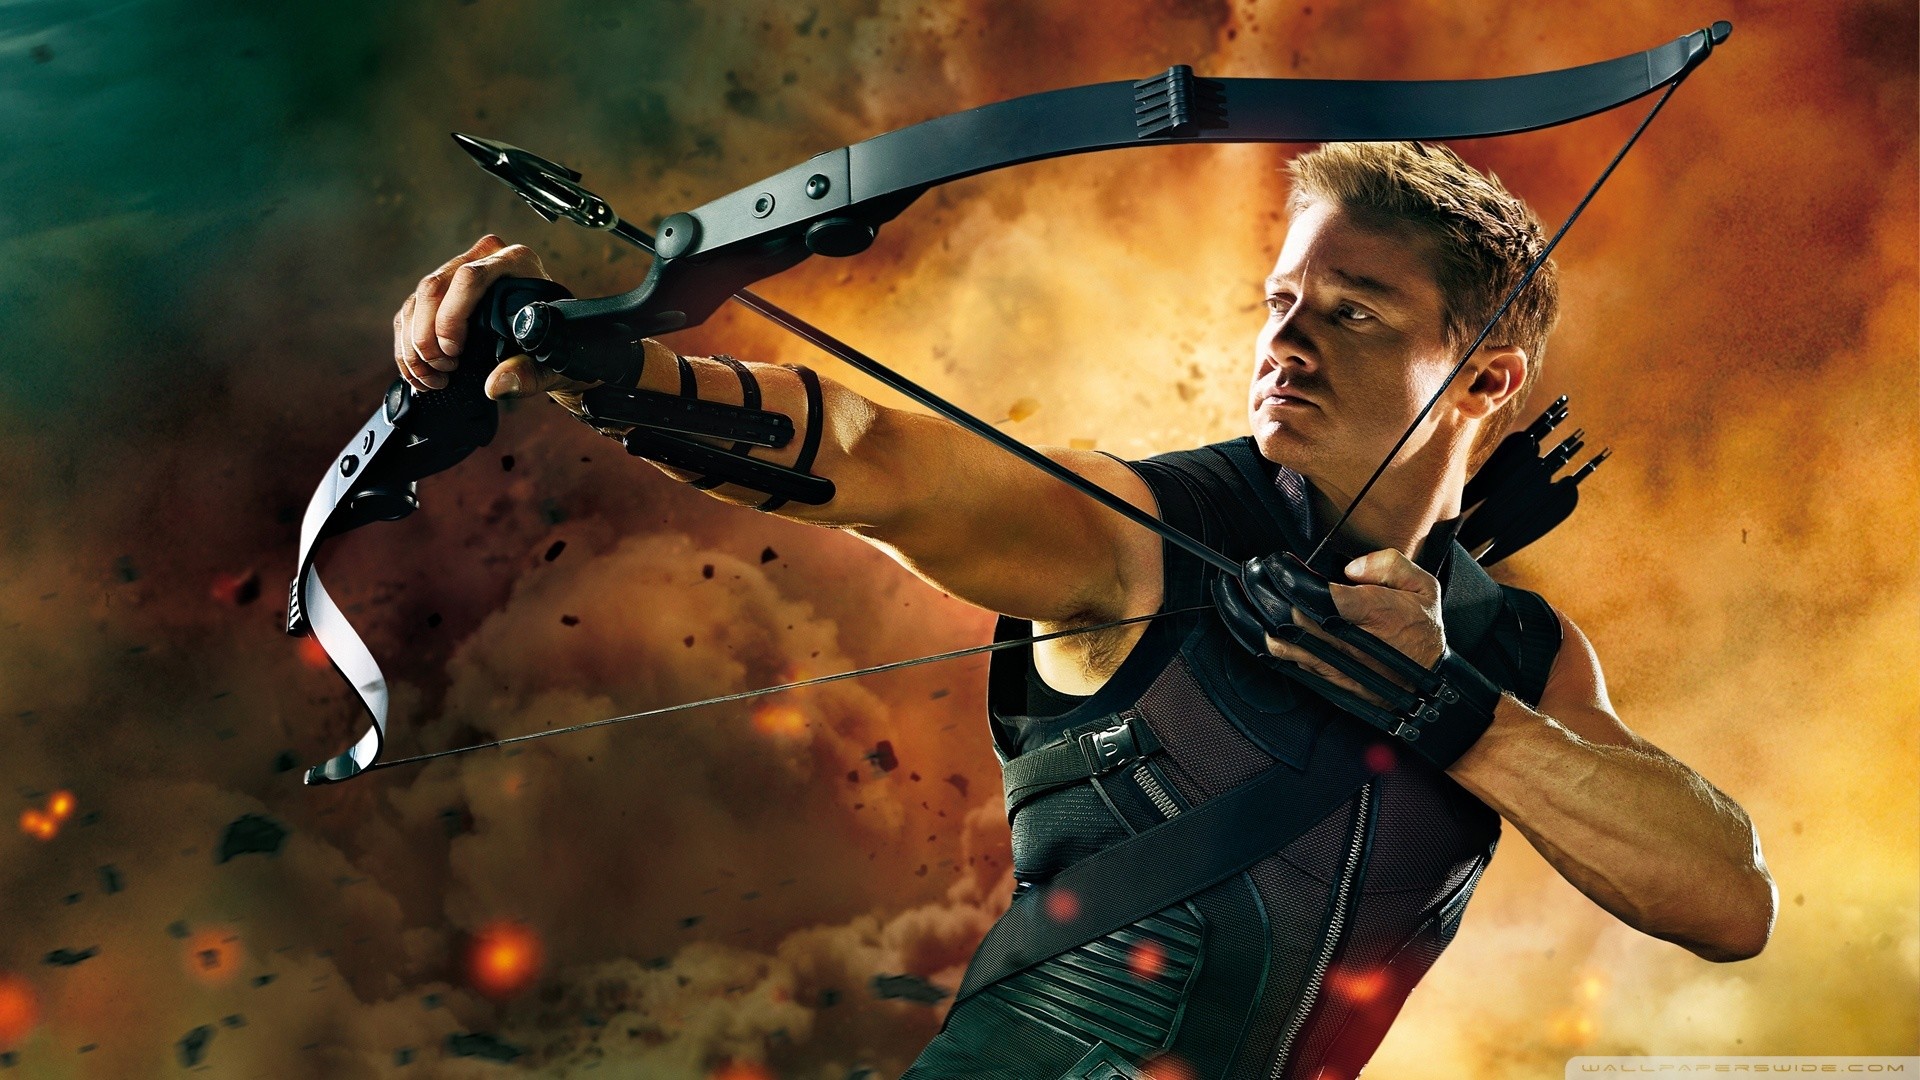 Hawkeye in the avengers wallpaper 1920×1080